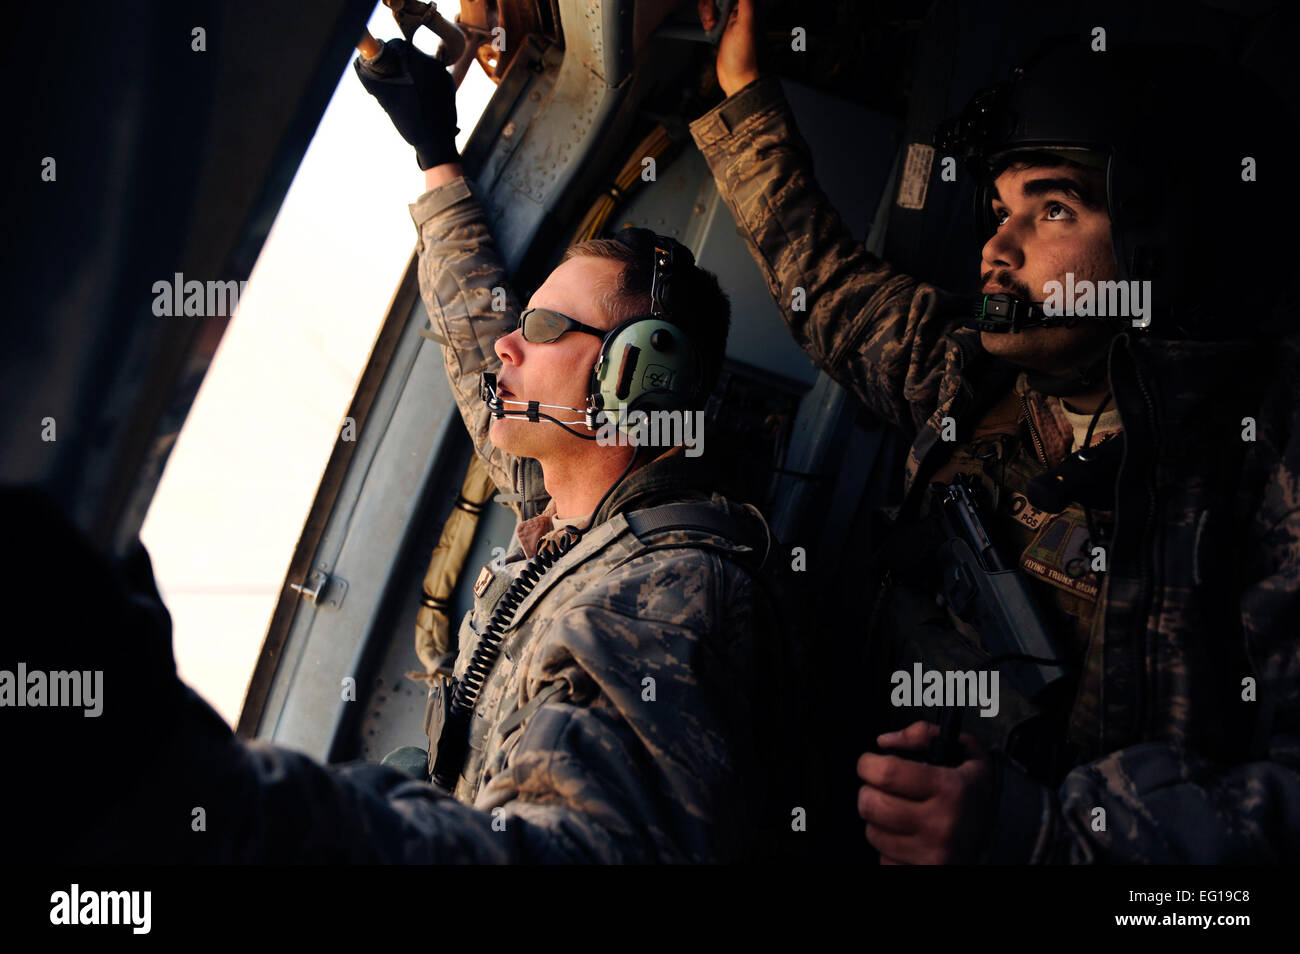 U.S. Air Force Tech. Le Sgt. Kevin Kontz à partir de la 838ème Groupe consultatif expéditionnaire de la Force aérienne des États-Unis et le s.. À partir de la 444e Justin Shults consultatif expéditionnaire de la numérisation de l'escadron la région à bord d'un hélicoptère Mi-17 comme il se prépare pour l'atterrissage lors d'une mission près de la Base aérienne de Shindand, l'Afghanistan, Jan 17, 2011. Le s.. Eric Harris Banque D'Images